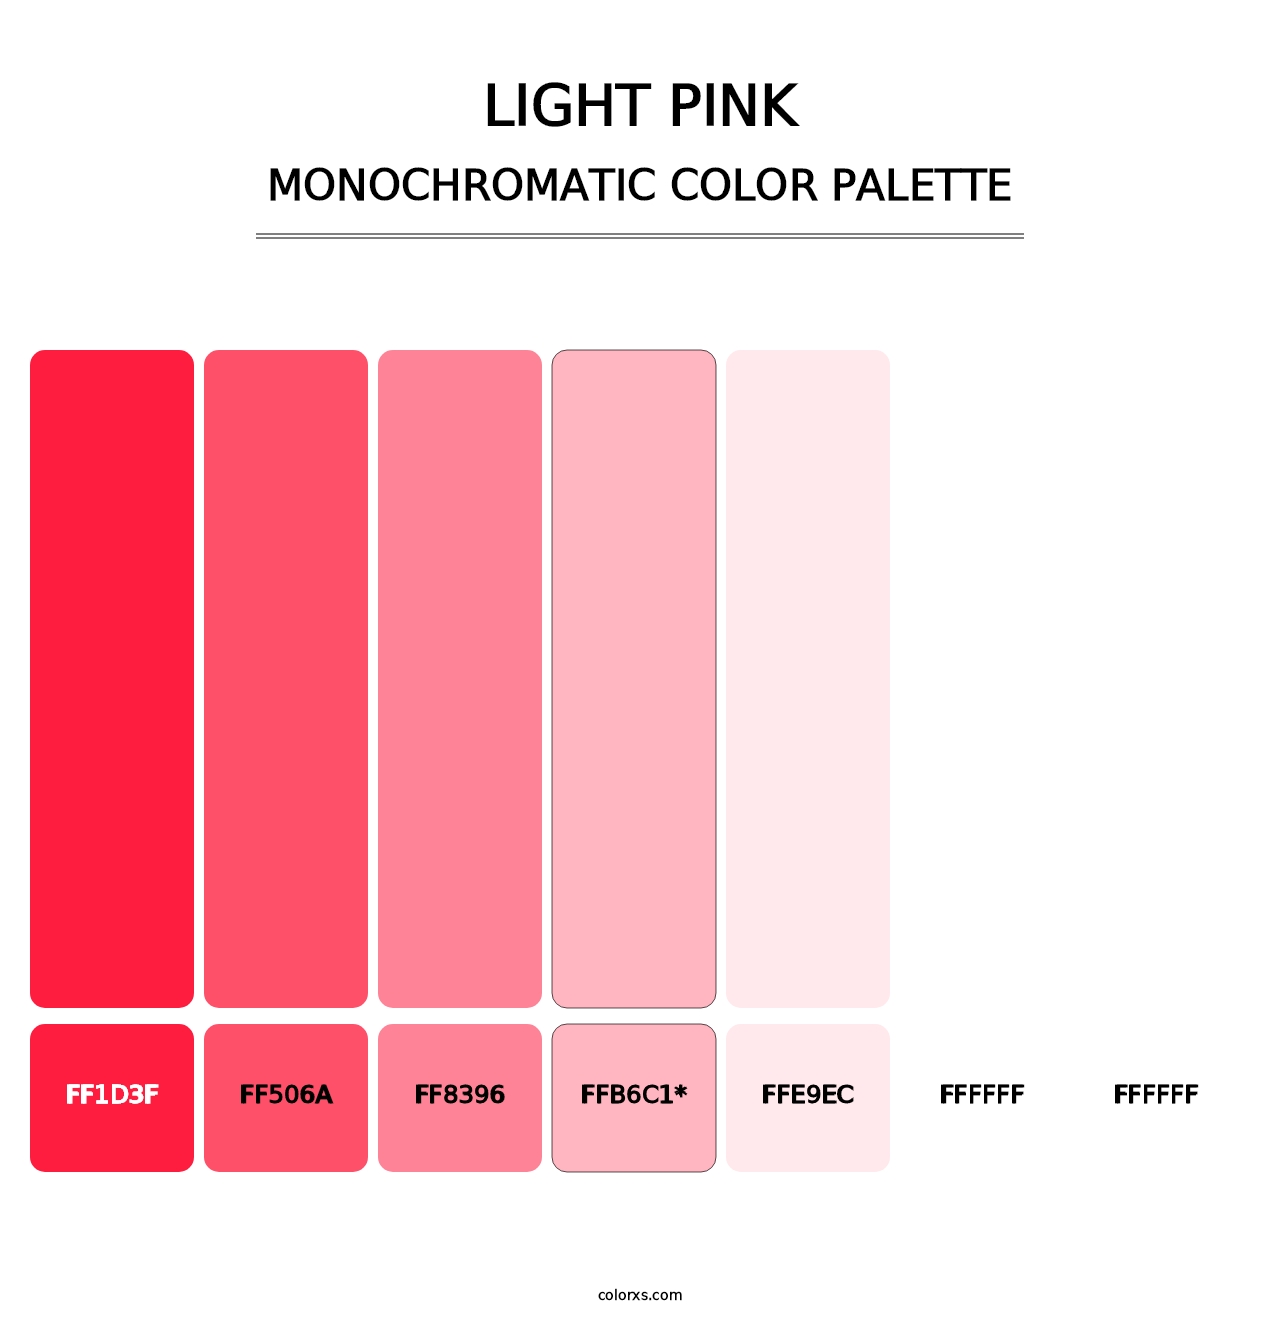 Light Pink - Monochromatic Color Palette